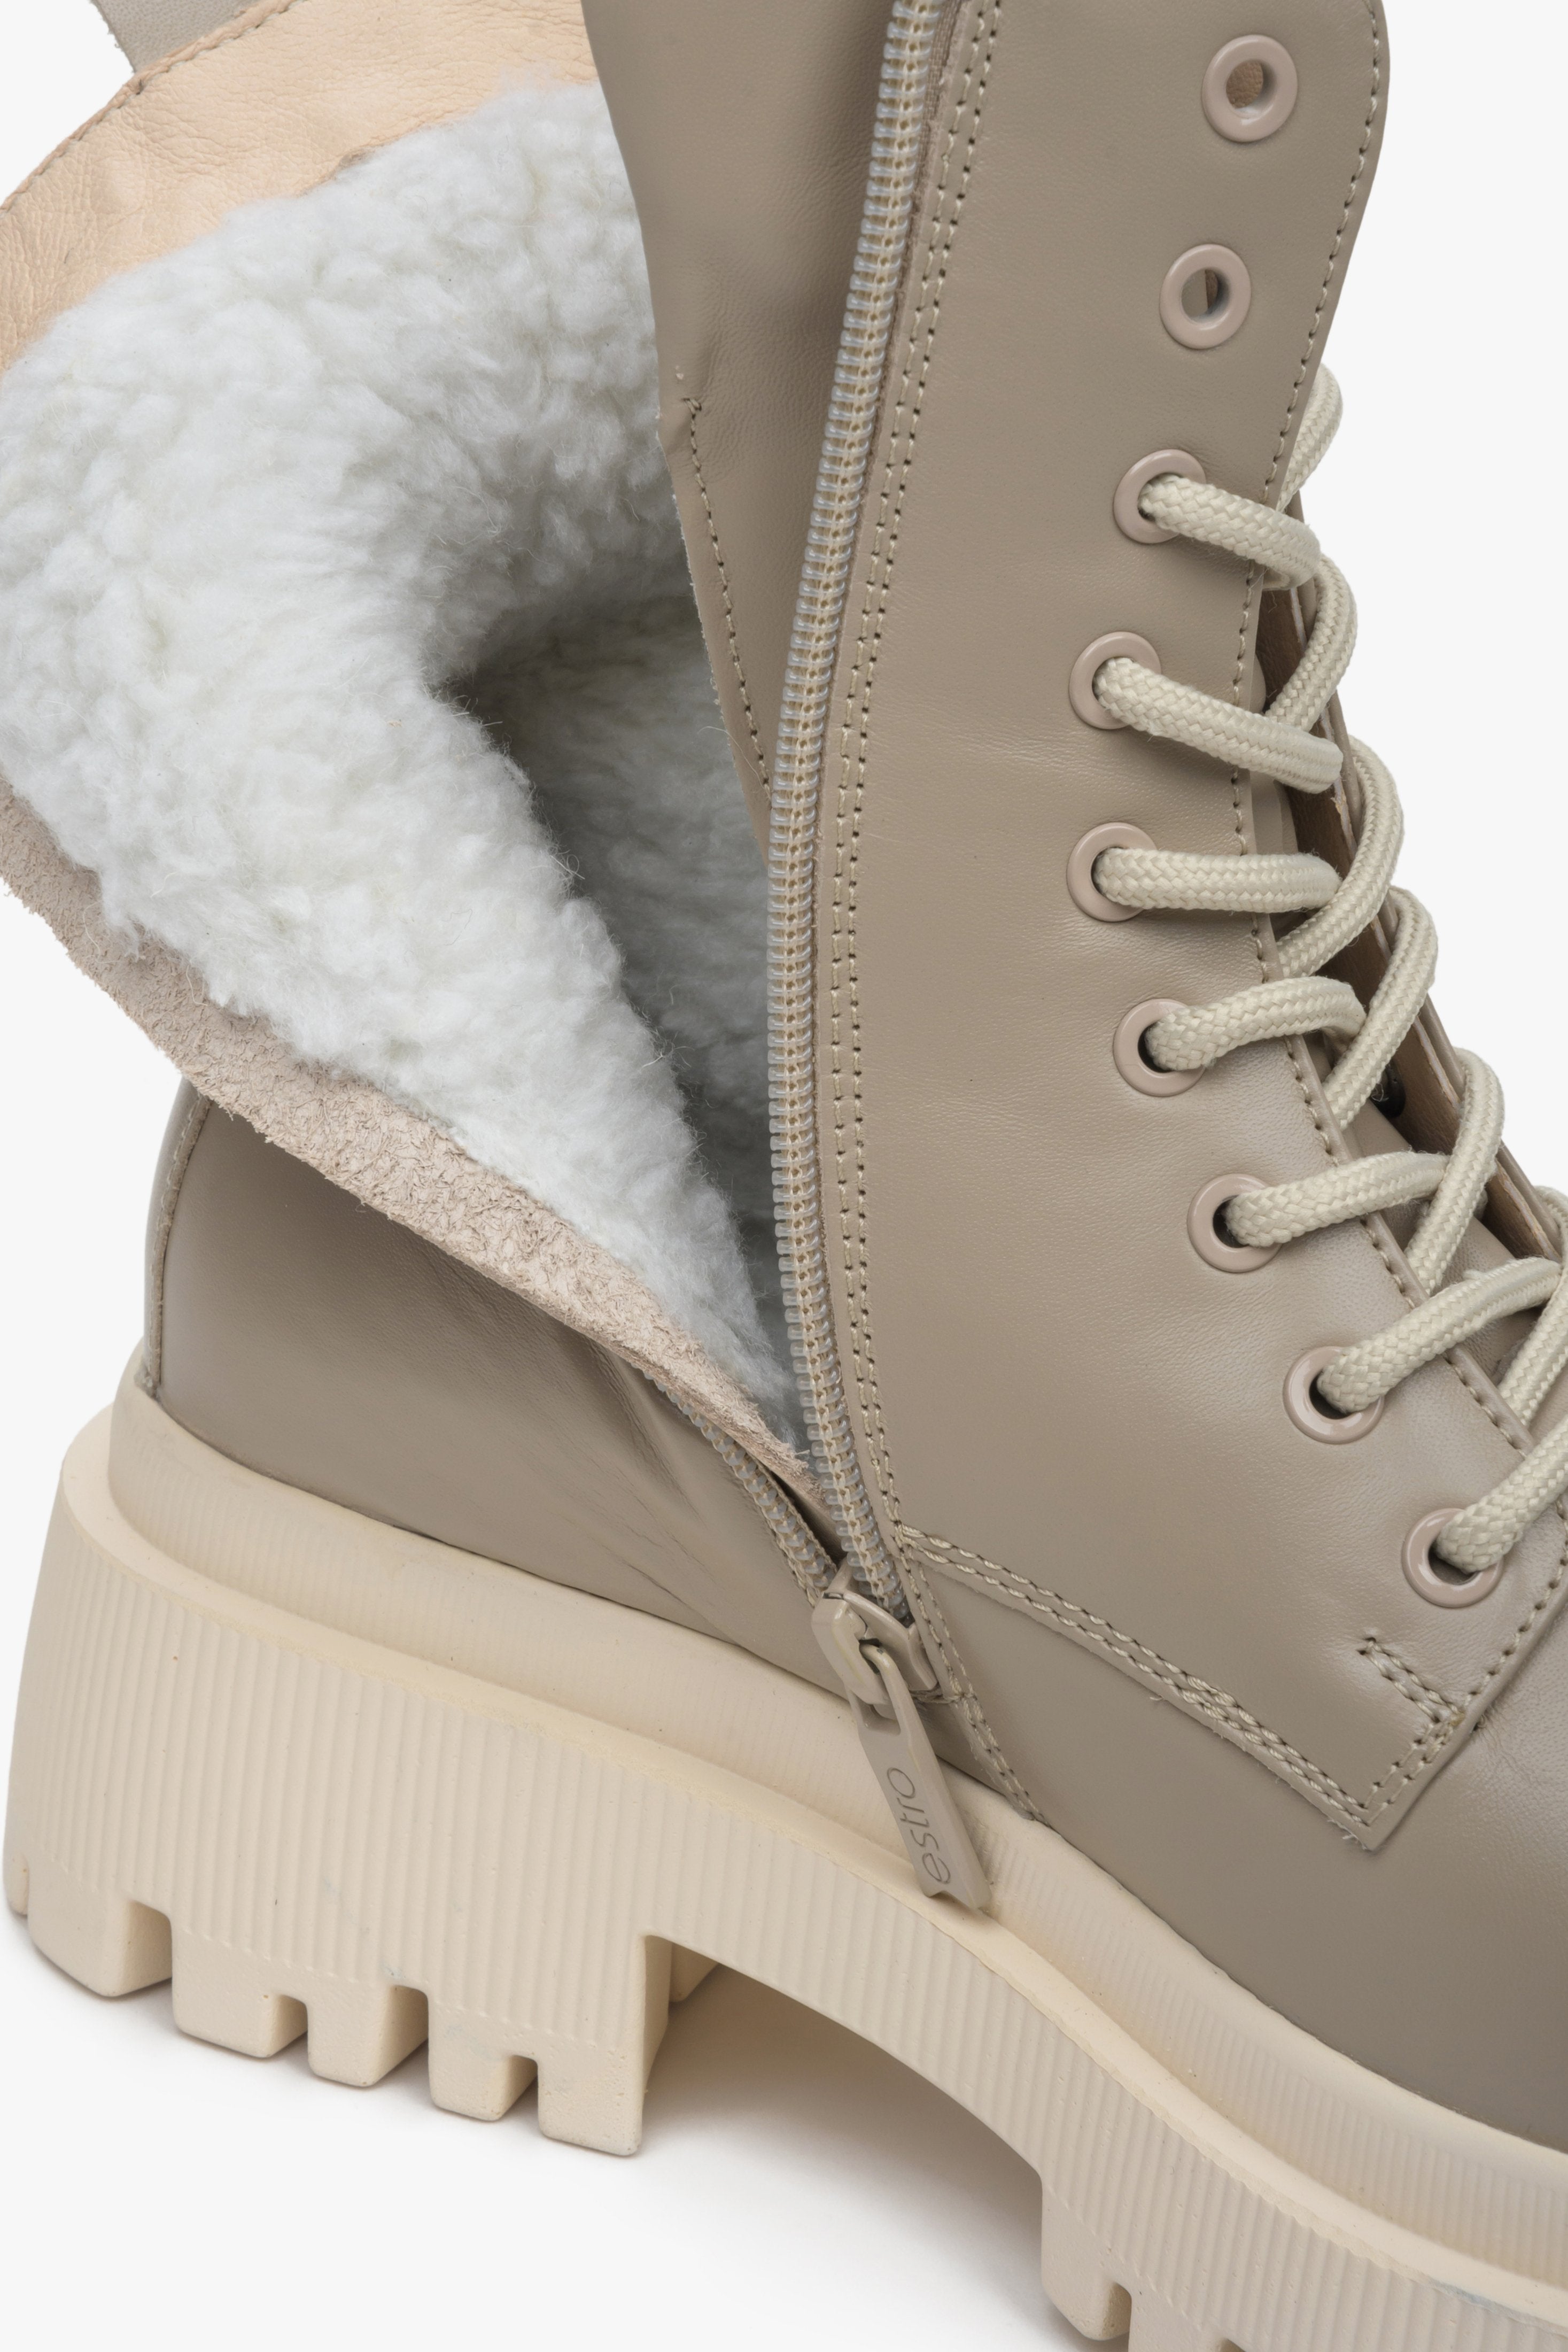 Damskie botki zimowe ze skóry naturalnej w kolorze beżowym ze sznurowaniem i suwakiem marki Estro - zbliżenie na wypełnienie buta.